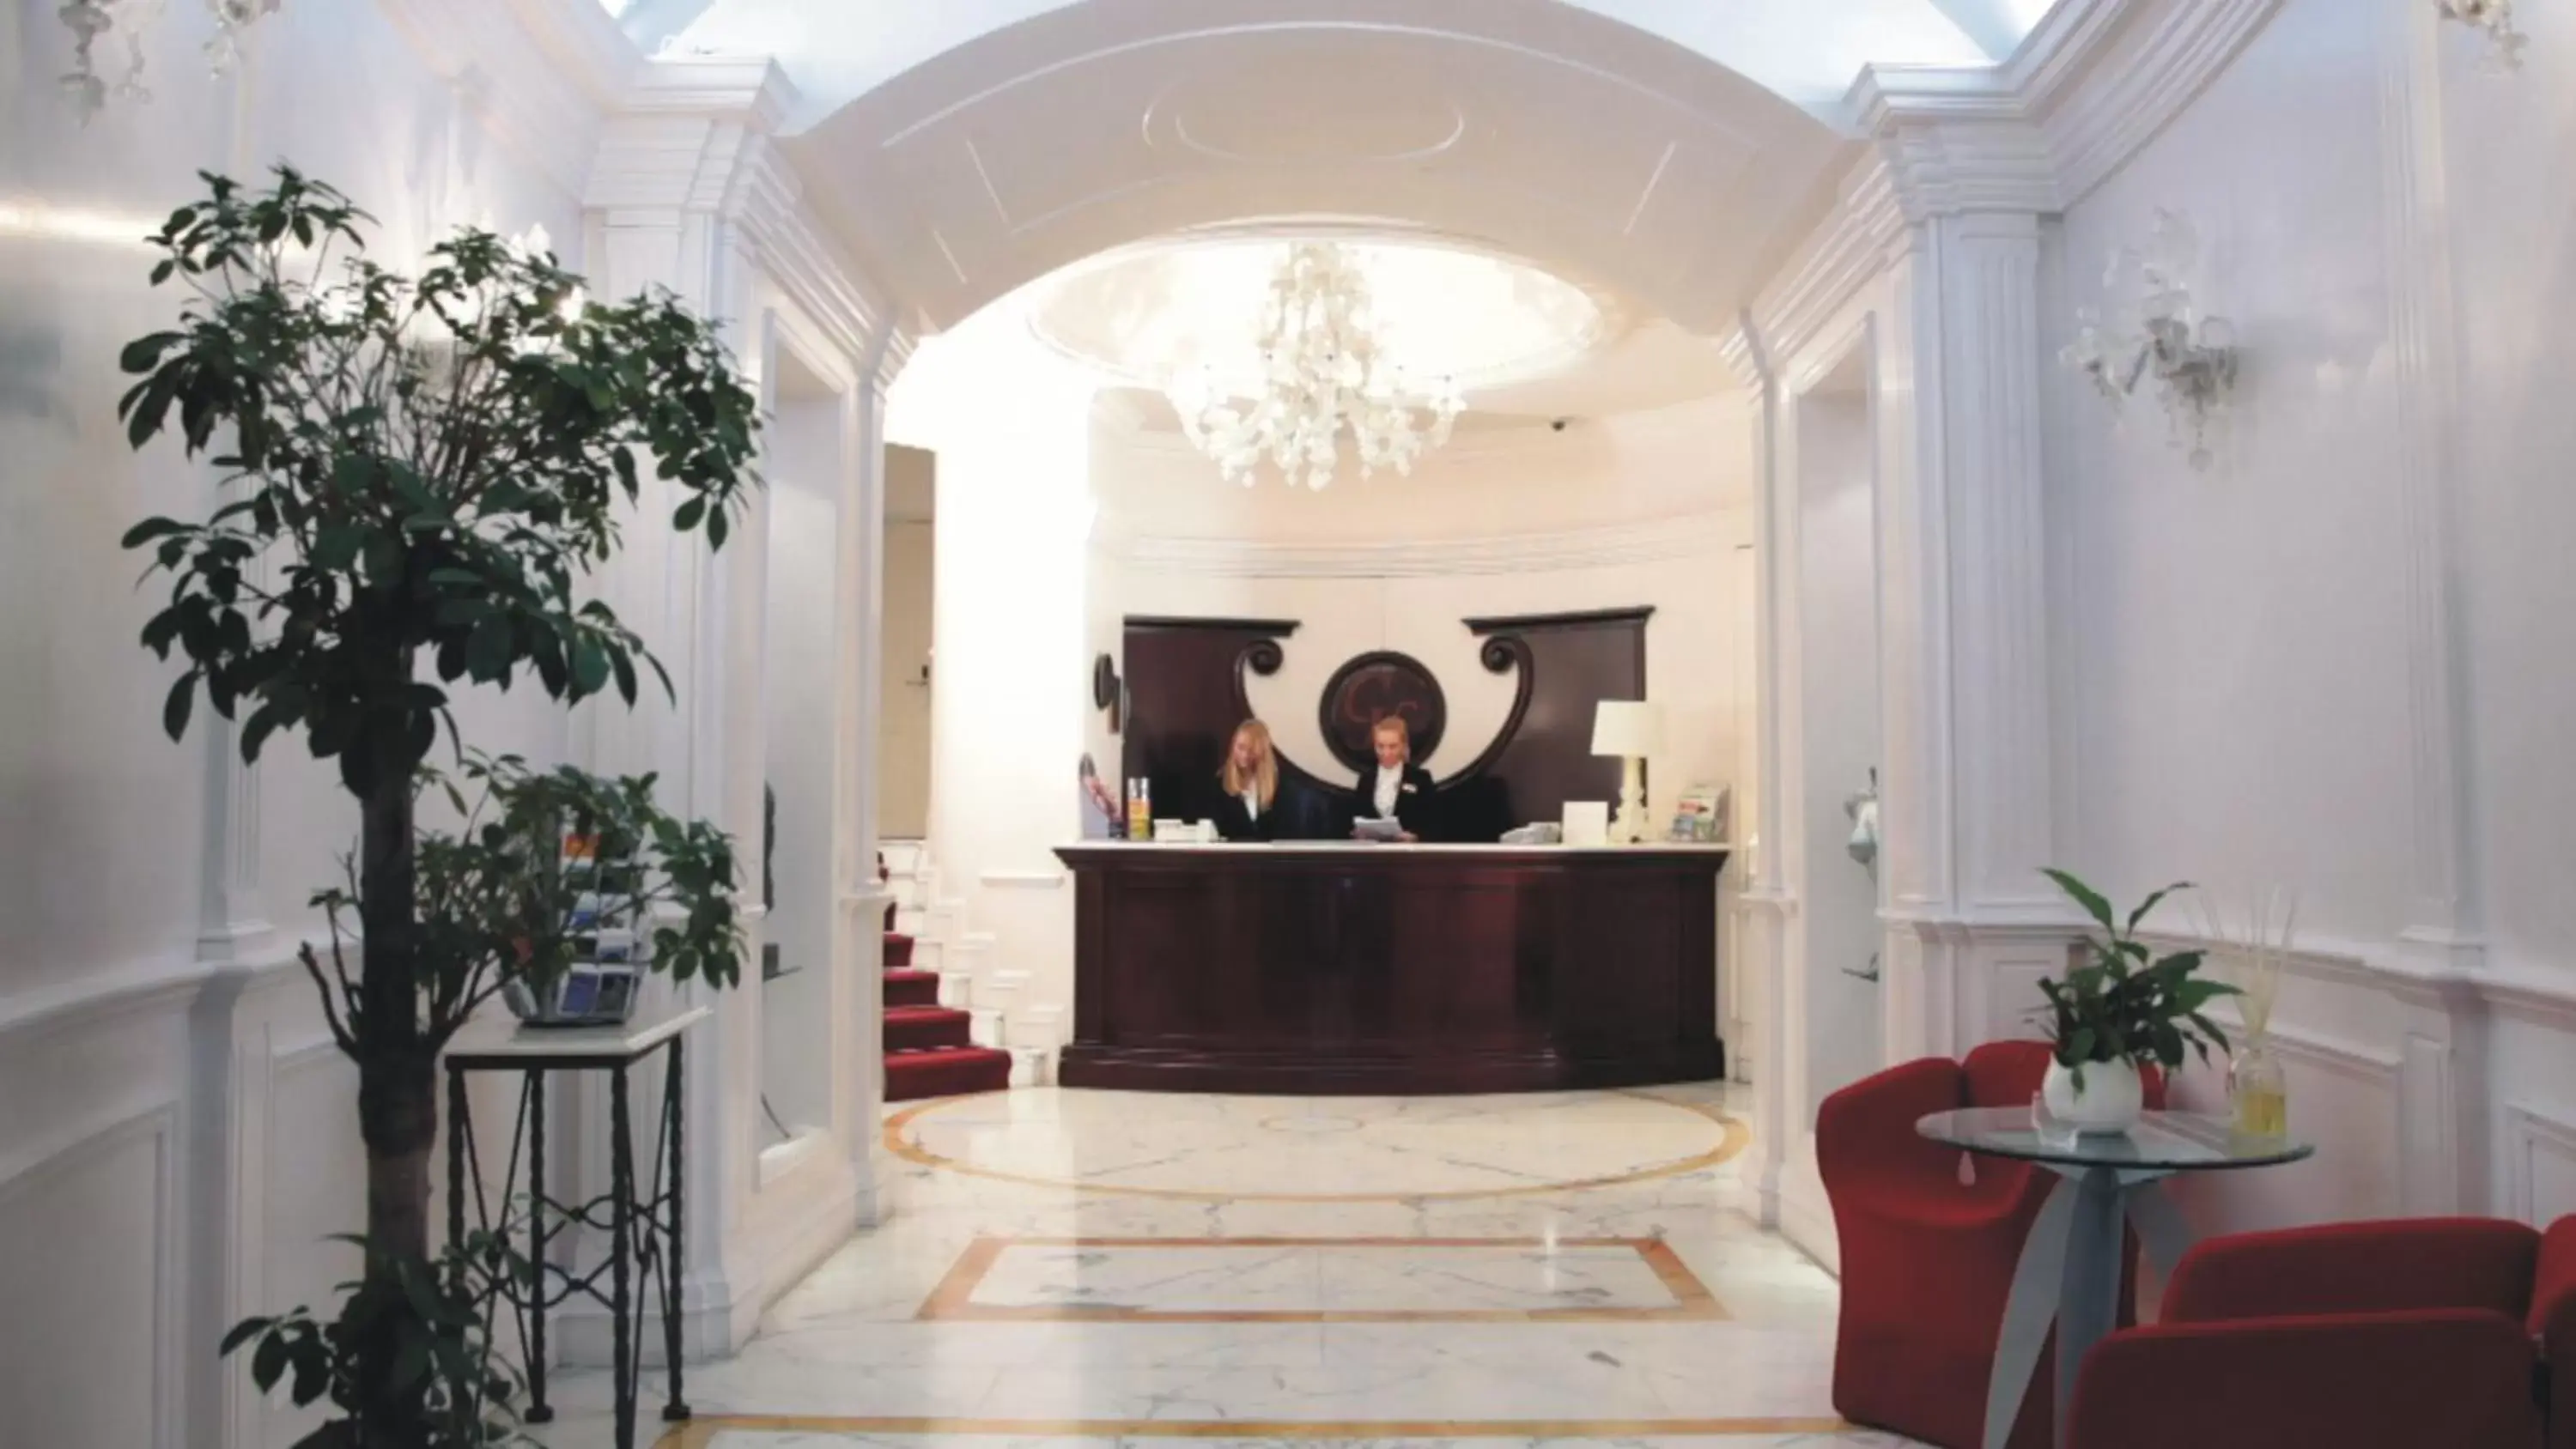 Lobby or reception, Lobby/Reception in Gambrinus Hotel